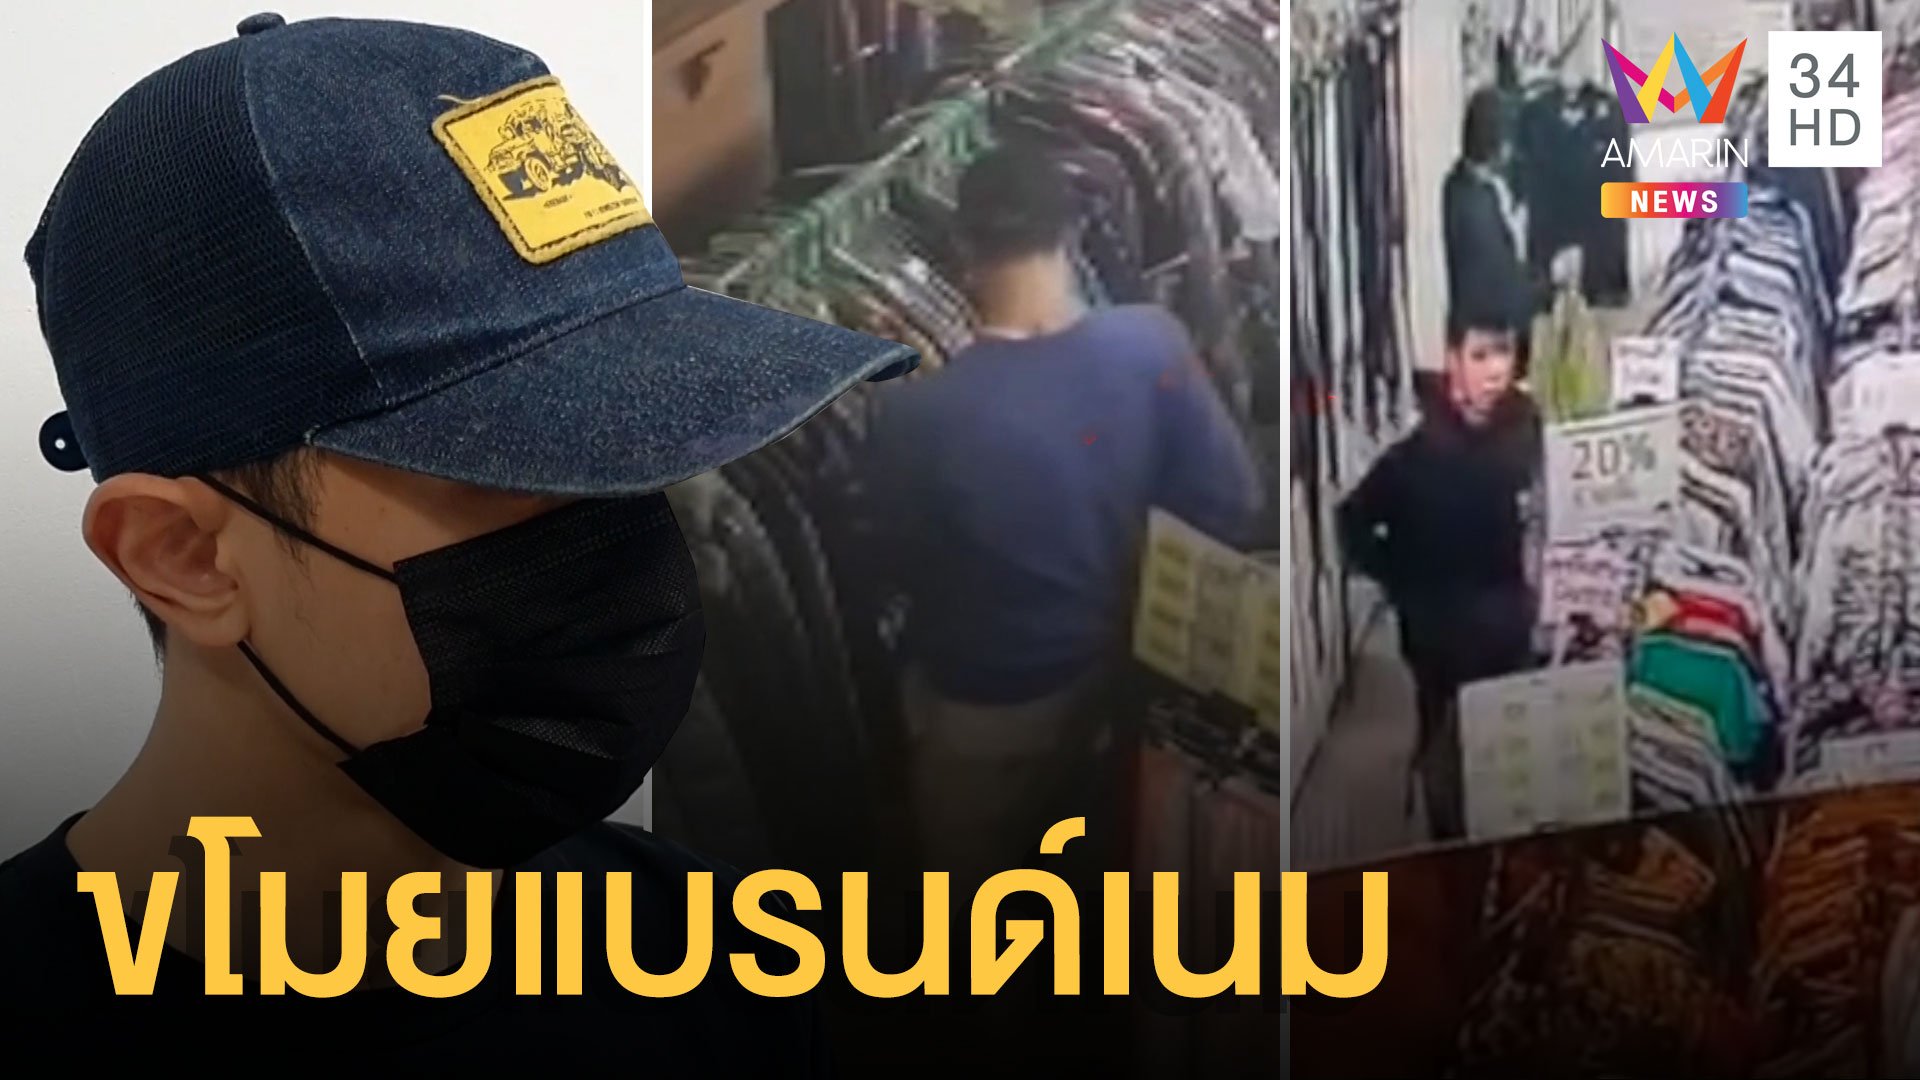 รวบลูกตำรวจขโมยเสื้อผ้าร้านแบรนด์เนมมือสอง | ข่าวเที่ยงอมรินทร์ | 25 ม.ค. 64 | AMARIN TVHD34